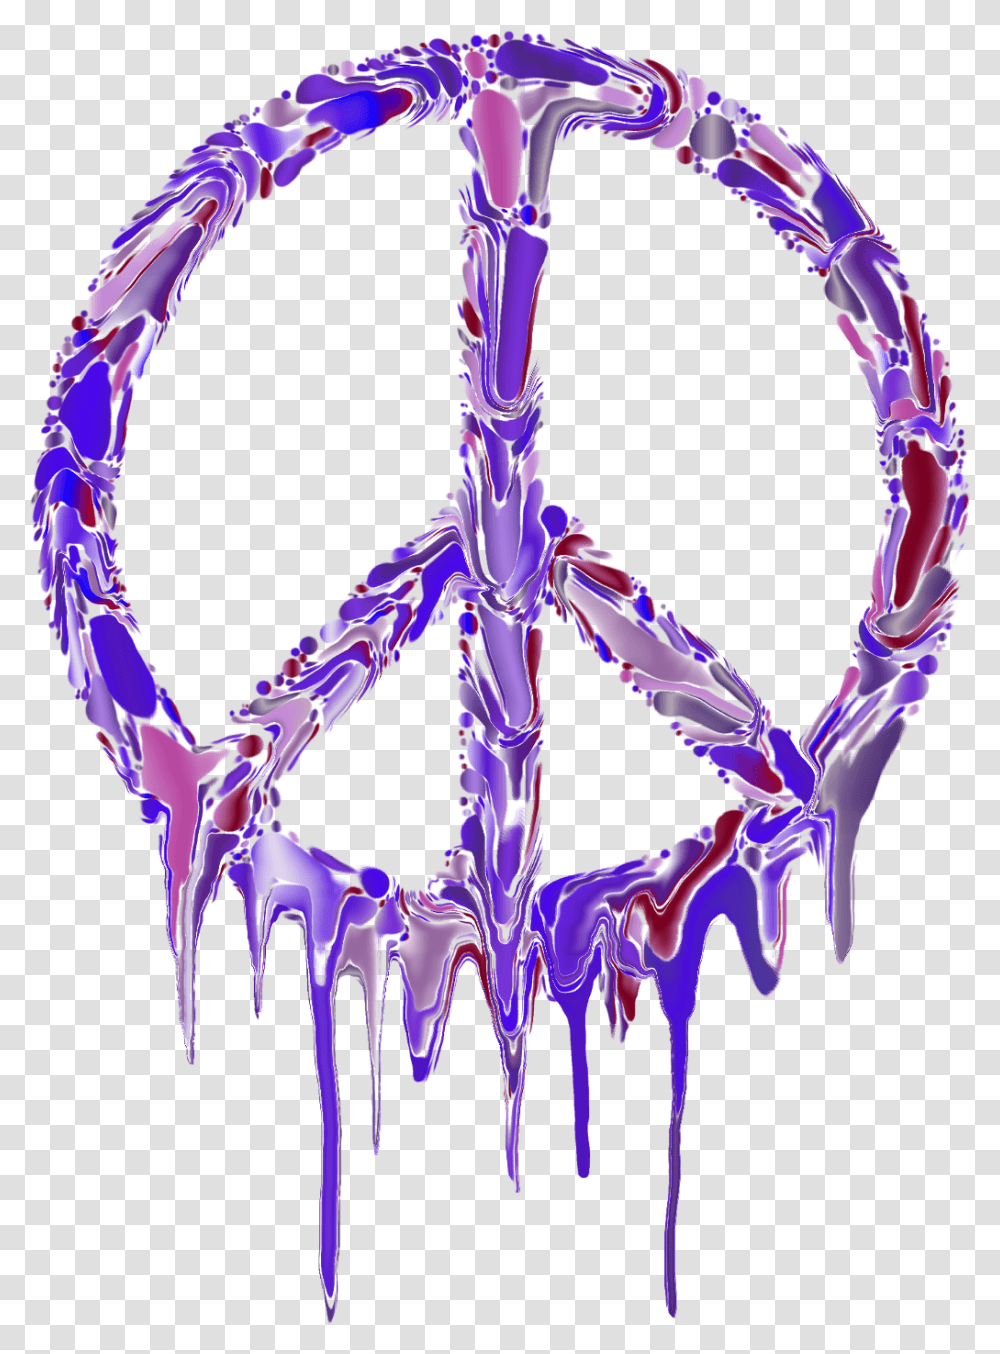 Paz Peace Sign No Background, Emblem, Glass, Doodle Transparent Png